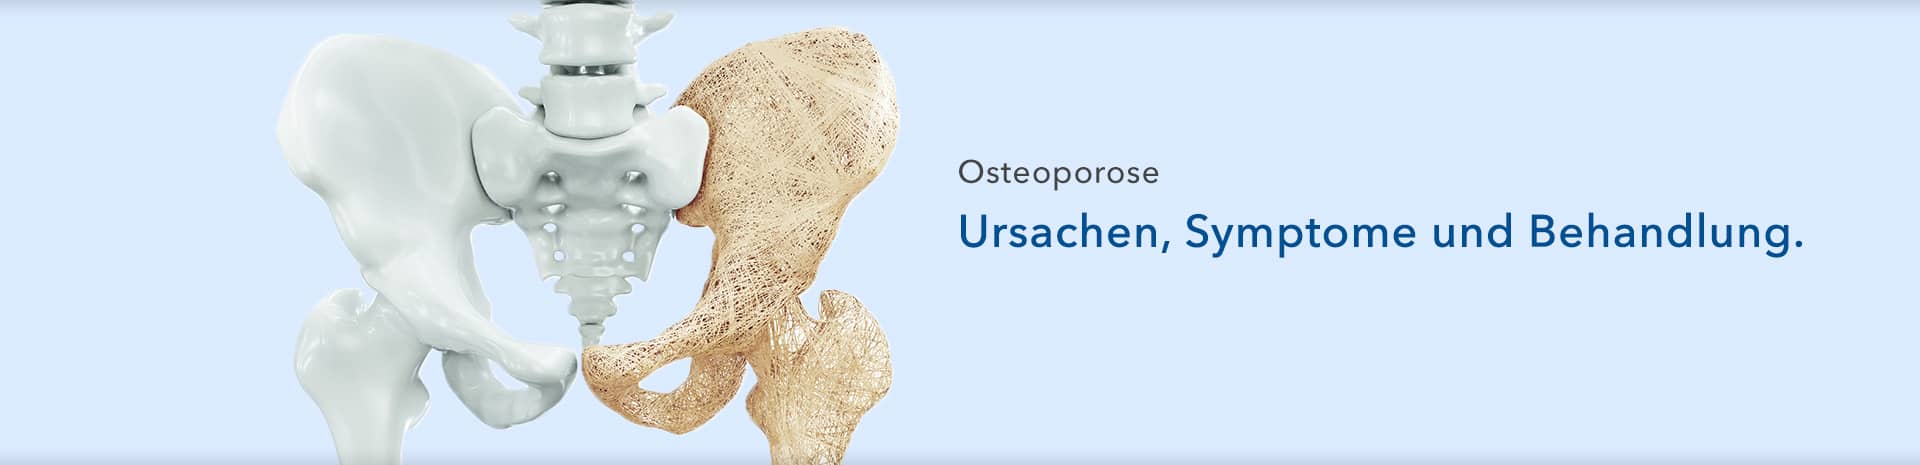 Osteoporose - Ursachen, Symptome und Behandlung